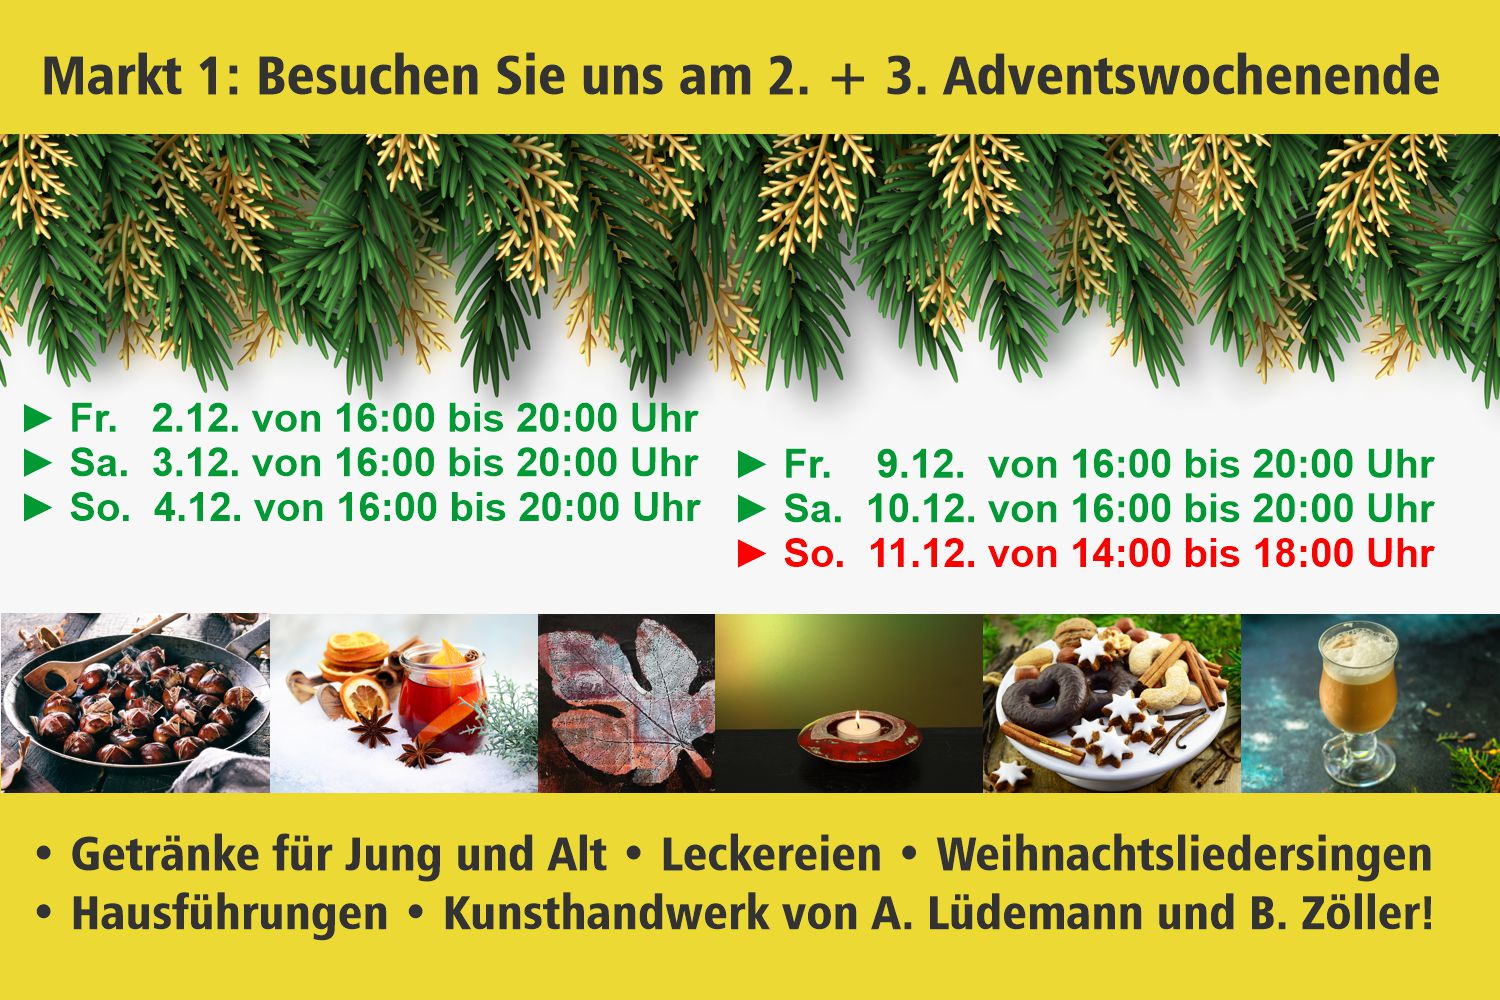 Bild zeigt: Plakat mit Programm an den beiden Adventswochenenden